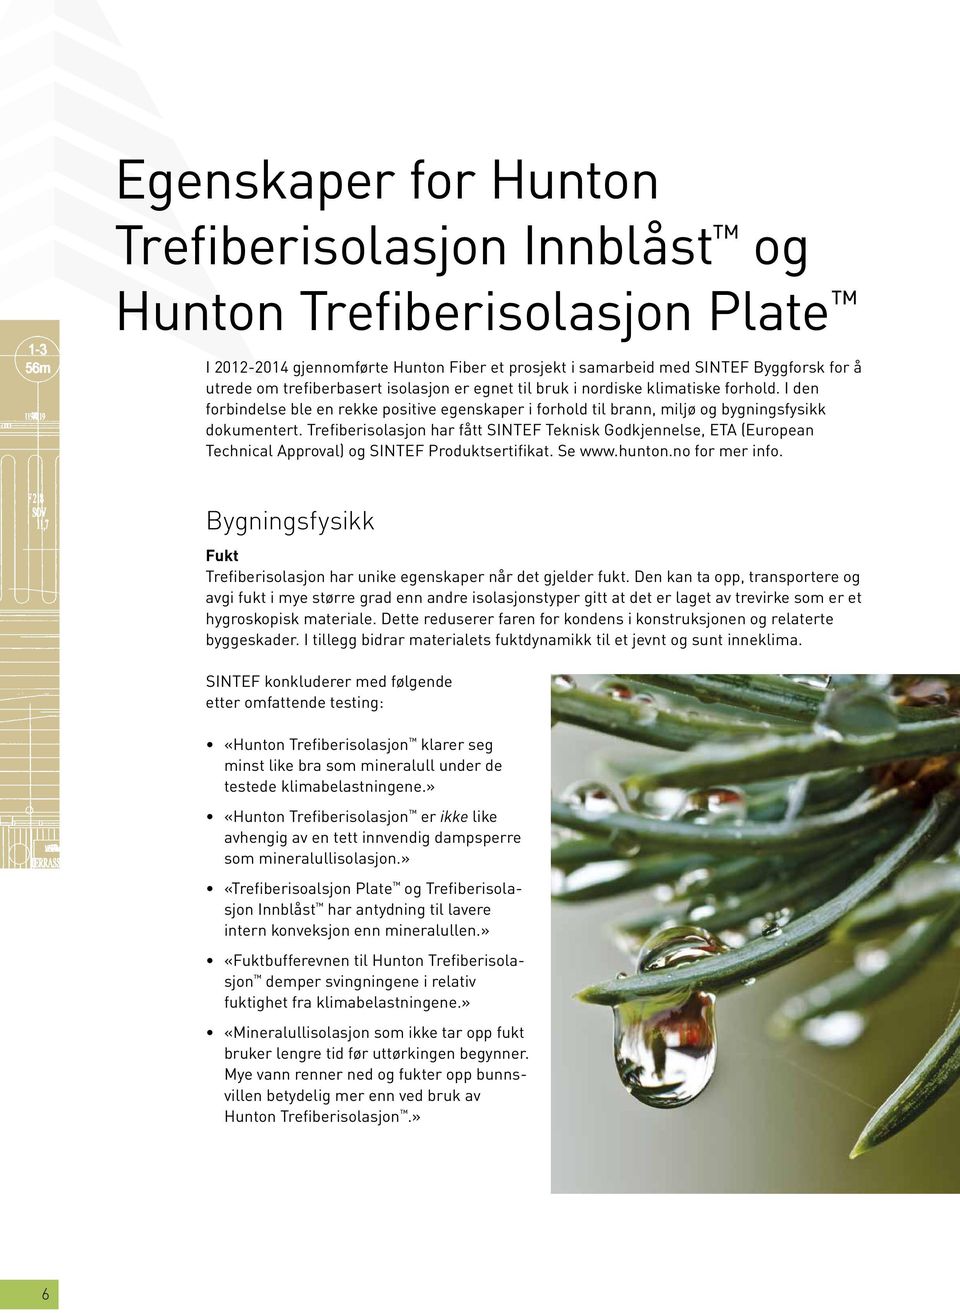 Trefiberisolasjon har fått Sintef Teknisk Godkjennelse, ETA (European Technical Approval) og Sintef Produktsertifikat. Se www.hunton.no for mer info.